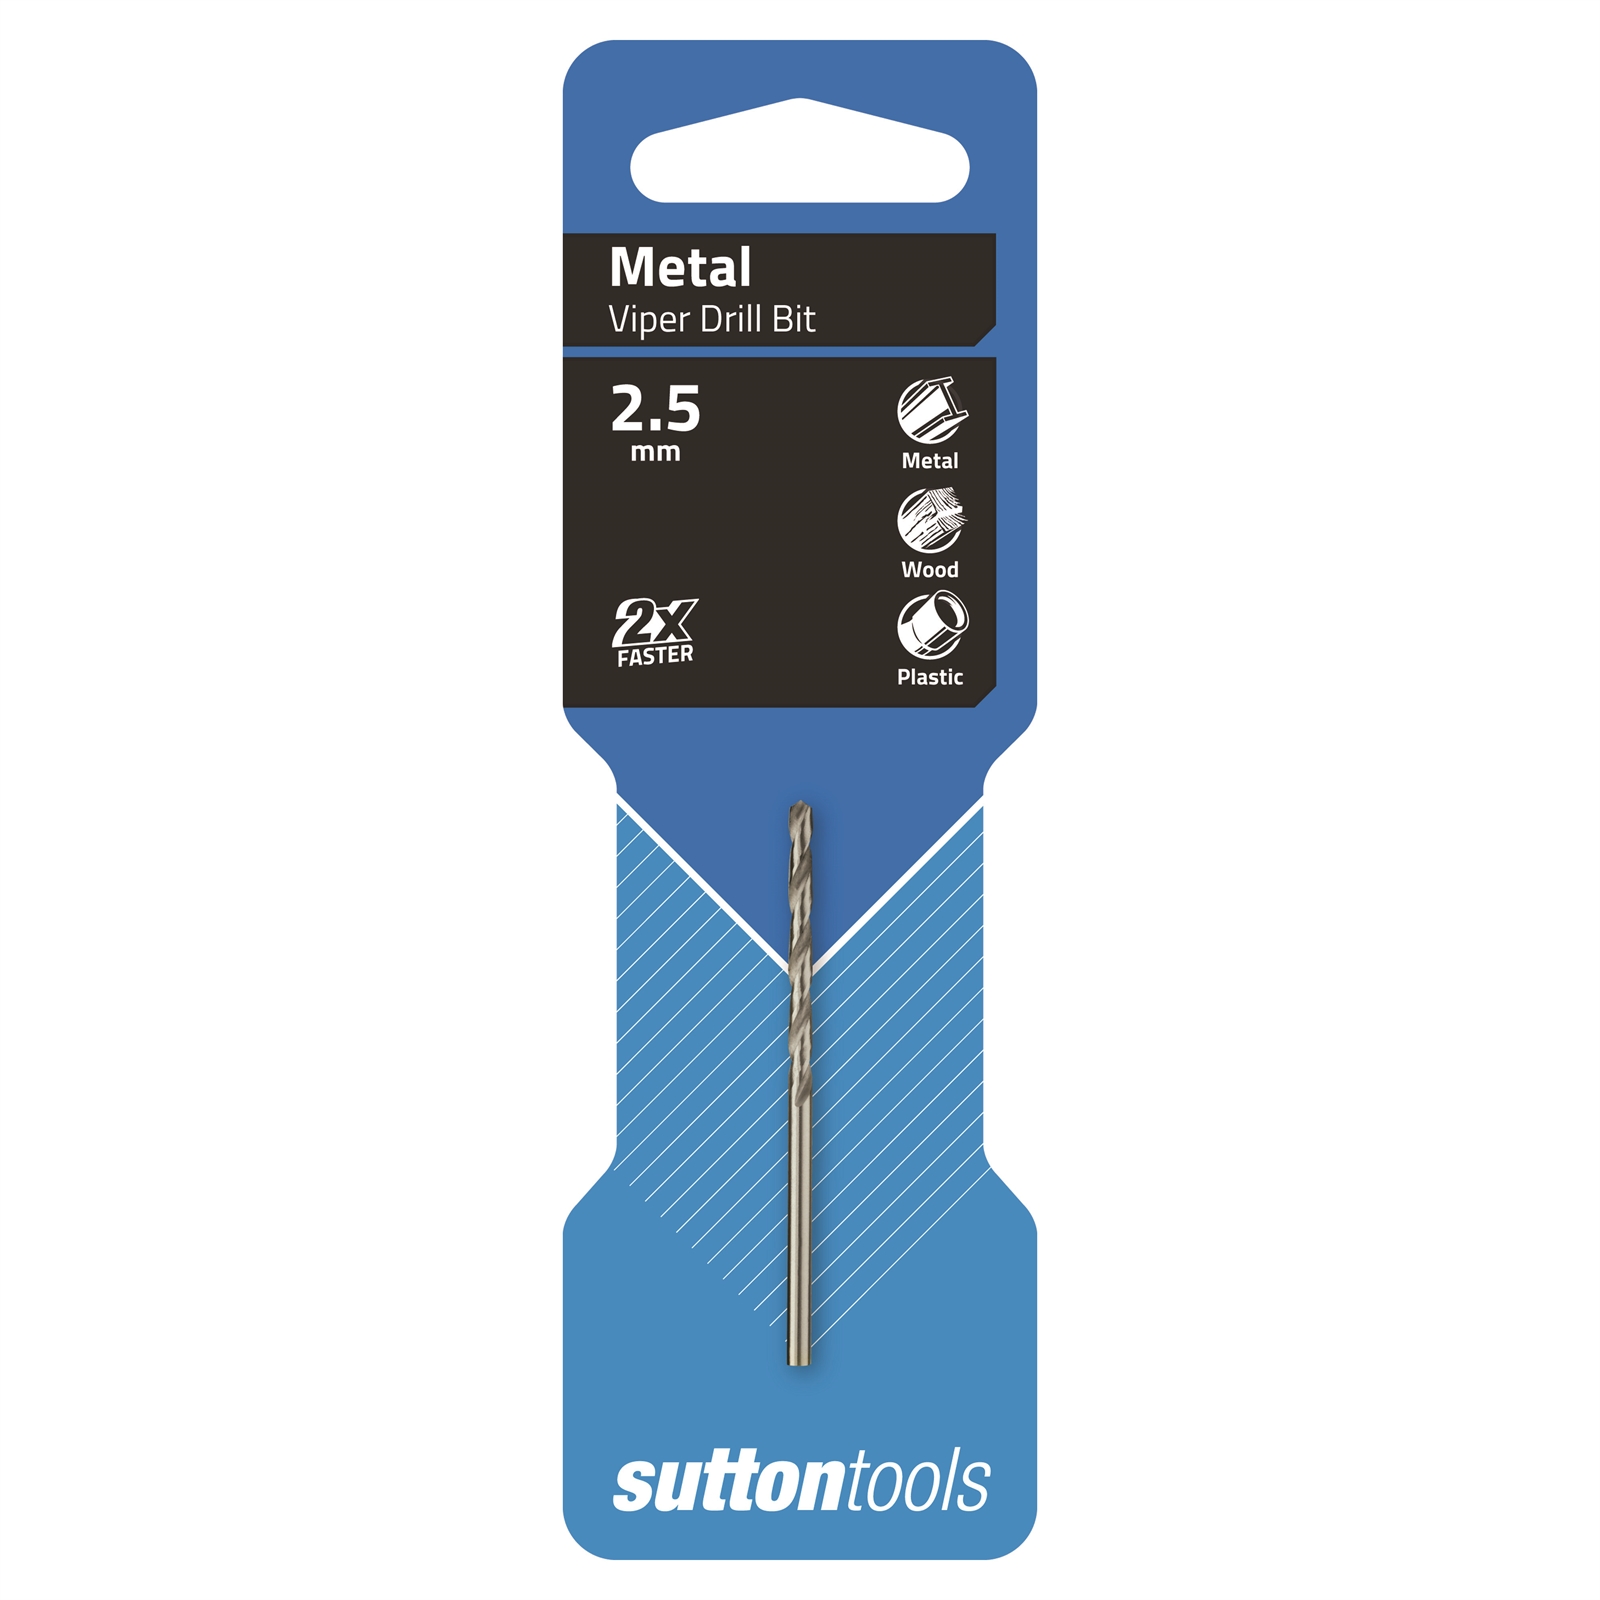 Sutton Tools 2.5mm HSS Metric Viper Drill Bit